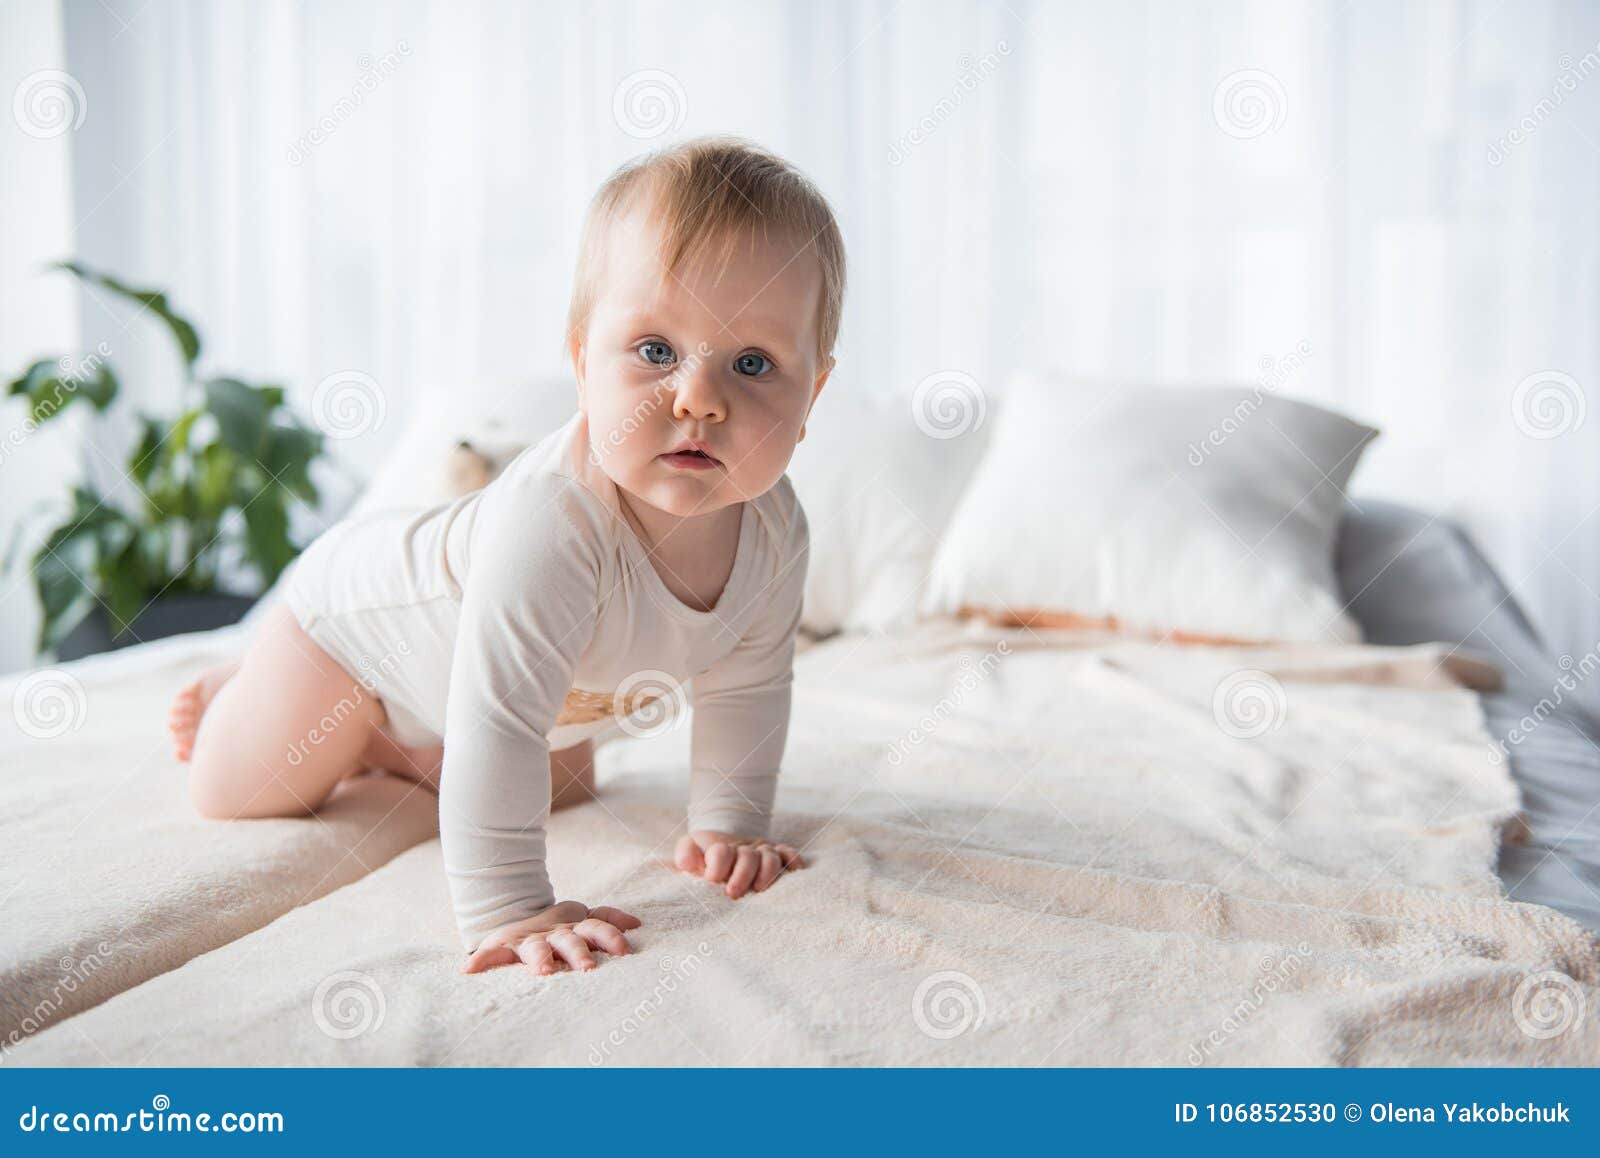 Verrukkelijke baby die op blad kruipen. Volledig lengteportret die van leuke zuigeling op het bed kruipen Zij bekijkt camera Exemplaarruimte in rechterkant